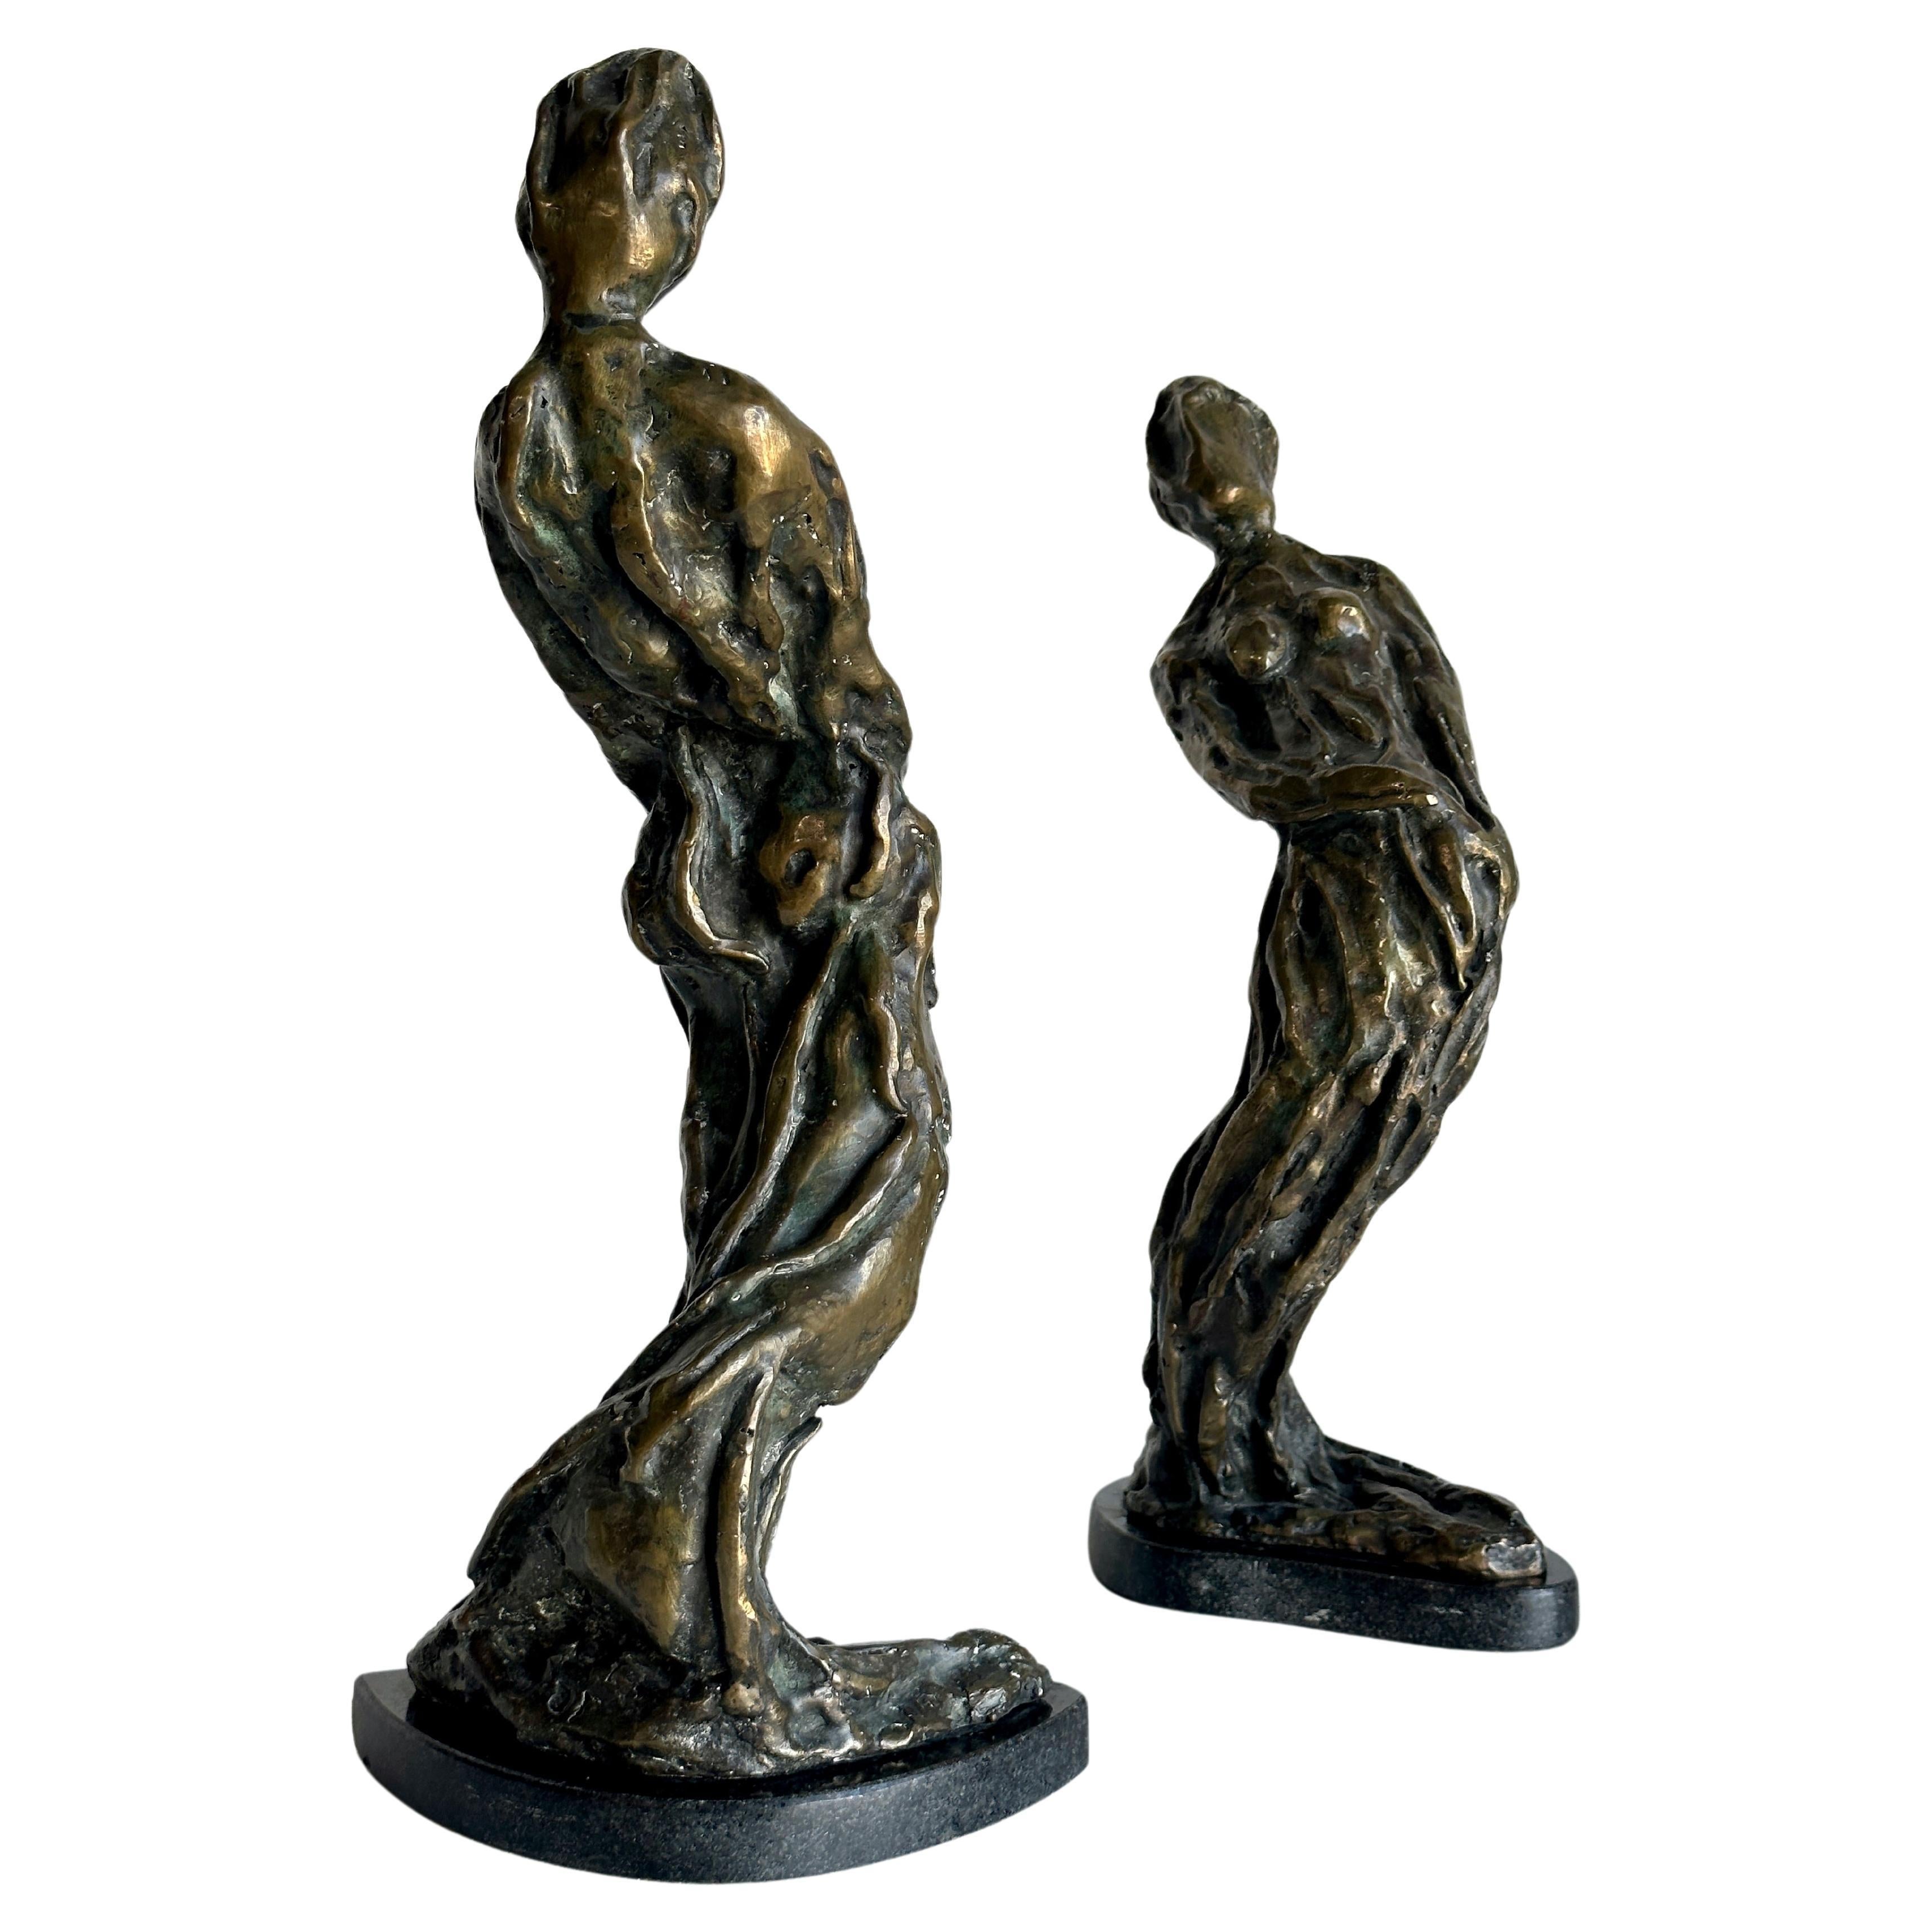 Modernistische figurative abstrakte Bronzeskulpturen, die als Paar verkauft werden. Beide vom Künstler signiert - es scheint 